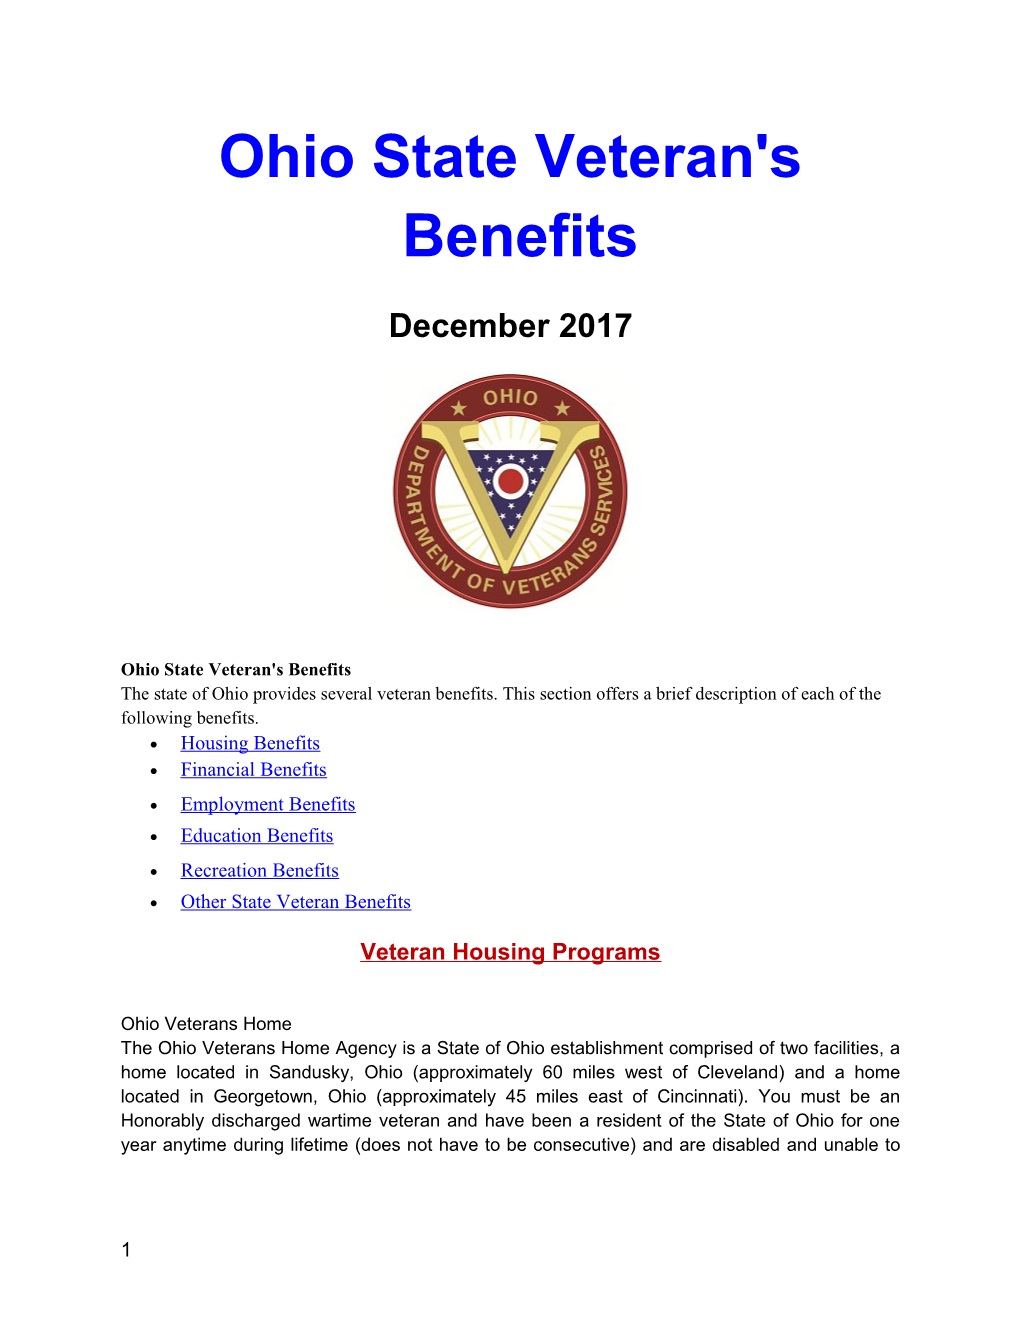 Ohio State Veteran's Benefits